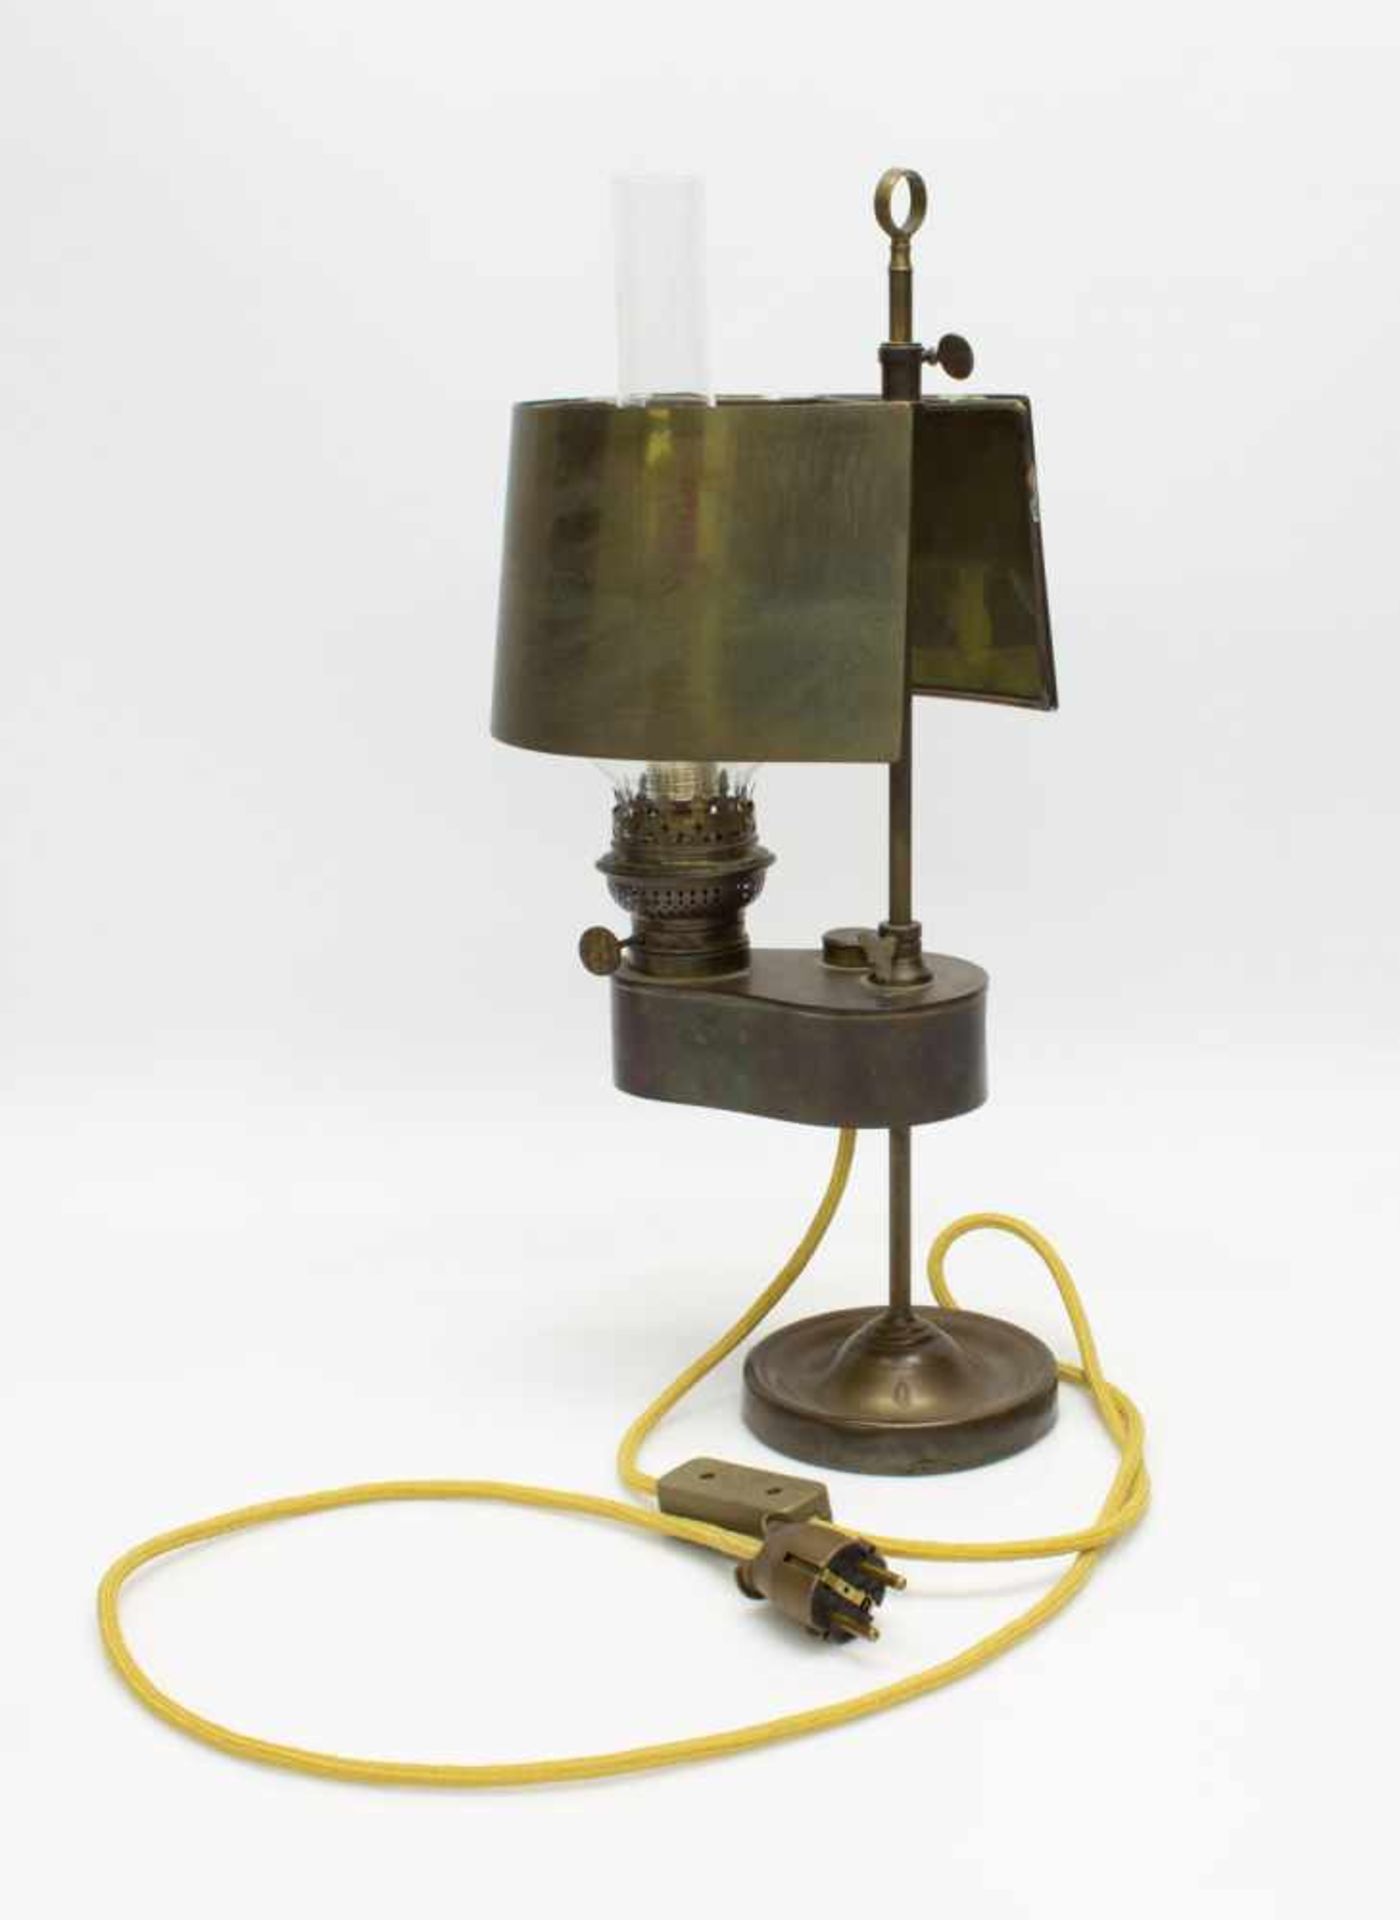 Petroleumtischlampedeutsch um 1930er Jahre, höhenverstellbar, mit Blendschirm, später